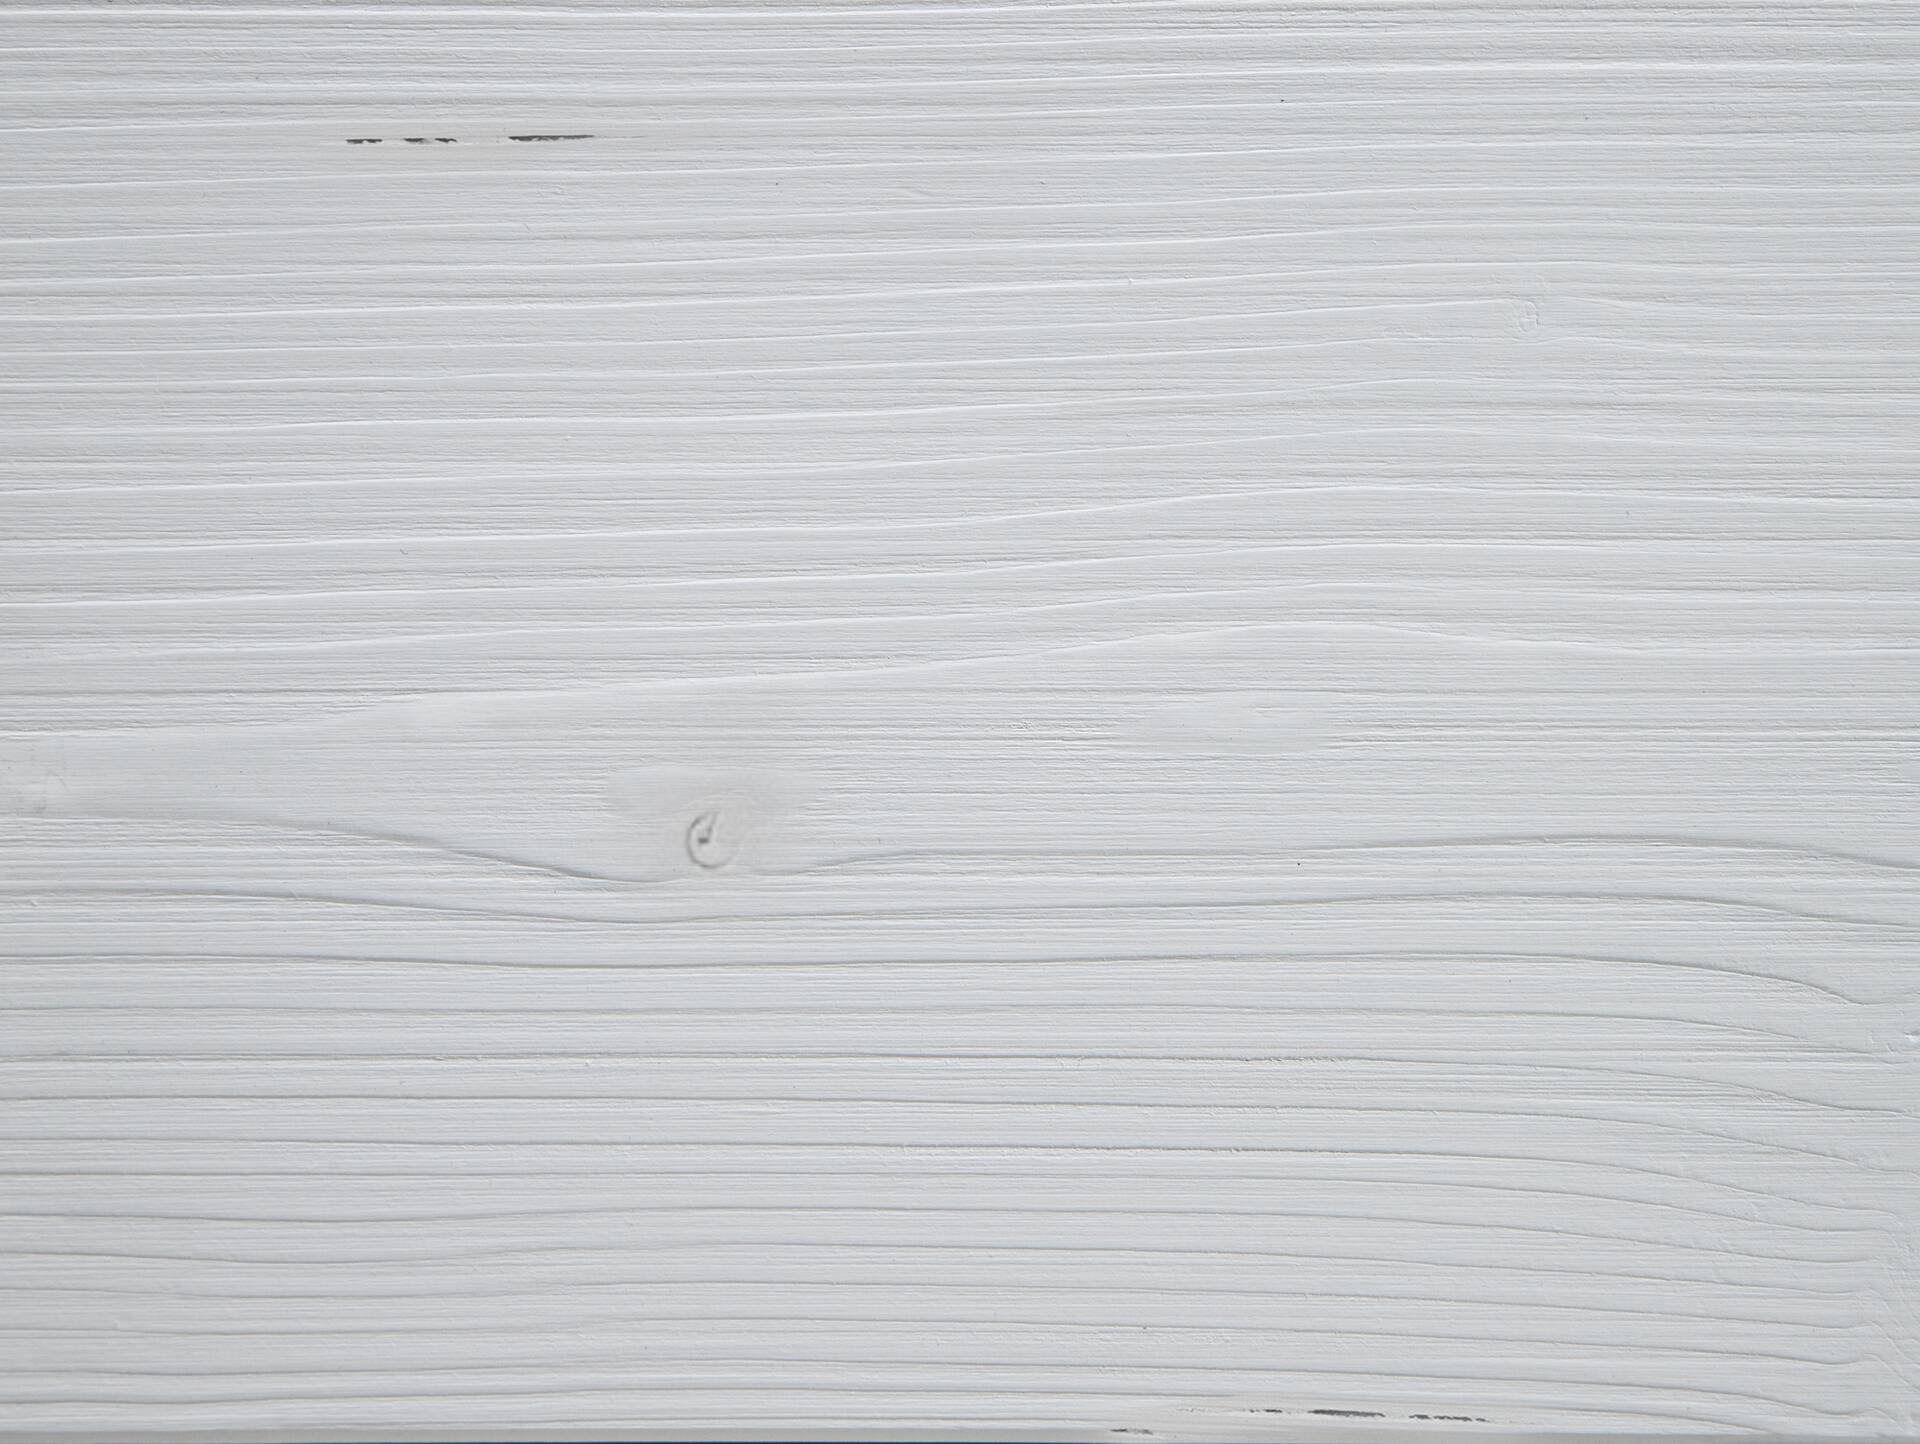 LUKY Bett Metallfuß, mit Polsterkopfteil, Material Massivholz, Fichte massiv 200 x 200 cm | weiss | Stoff Braun